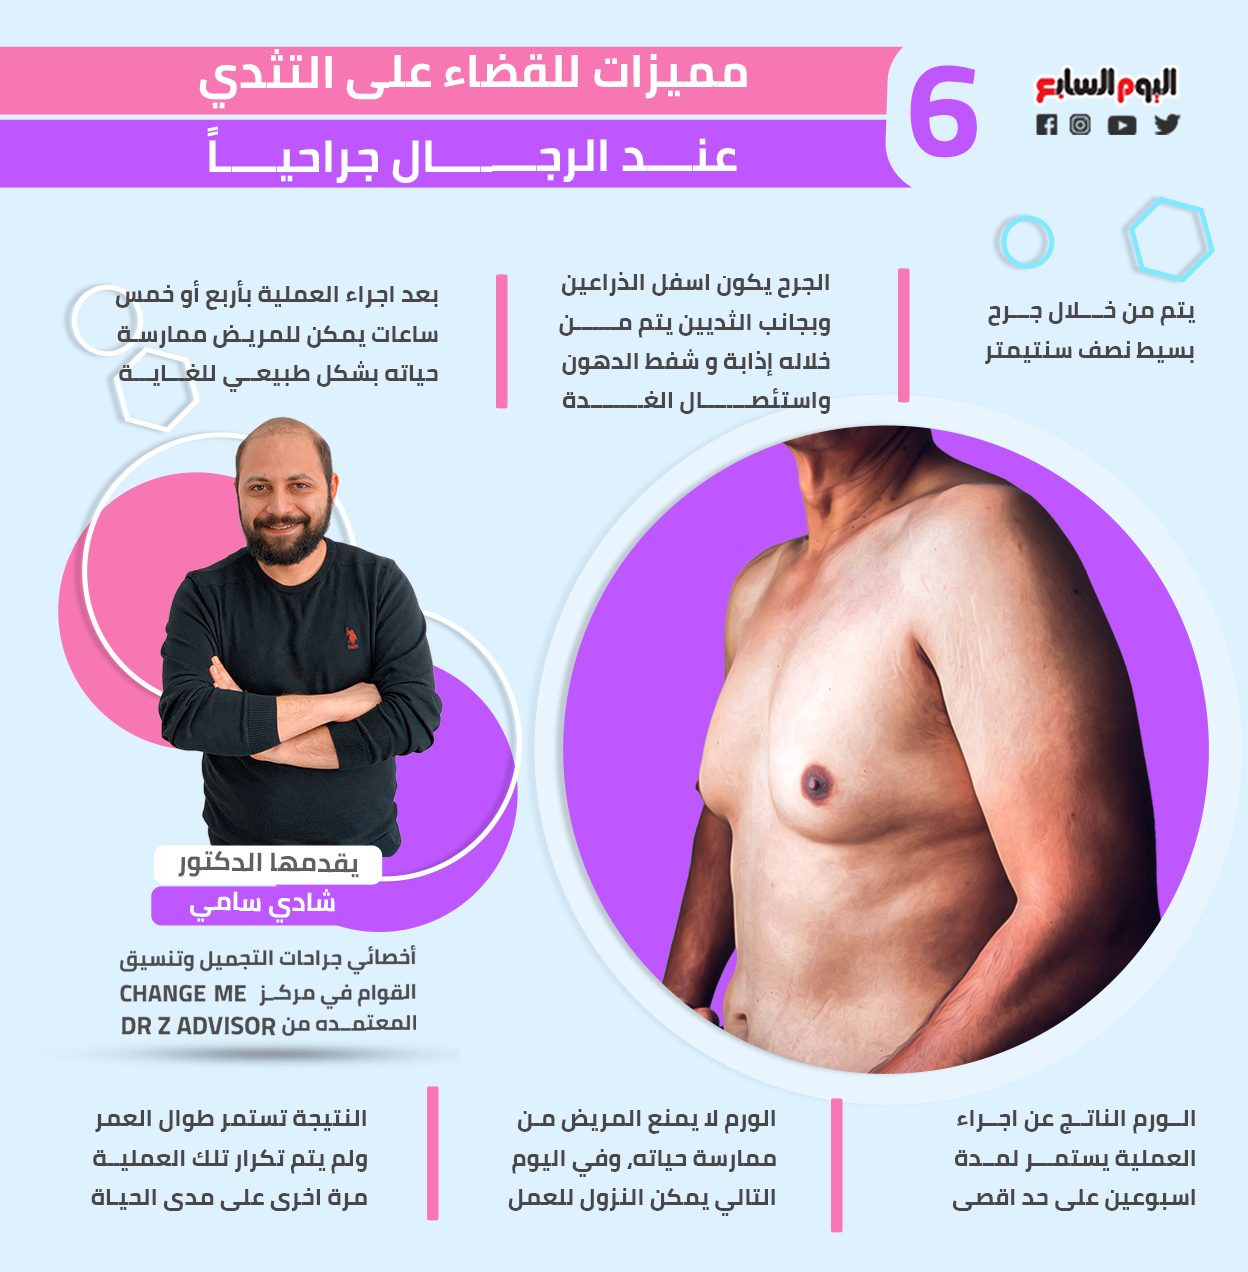 مميزات للقضاء على التثدي عند الرجال جراحياً